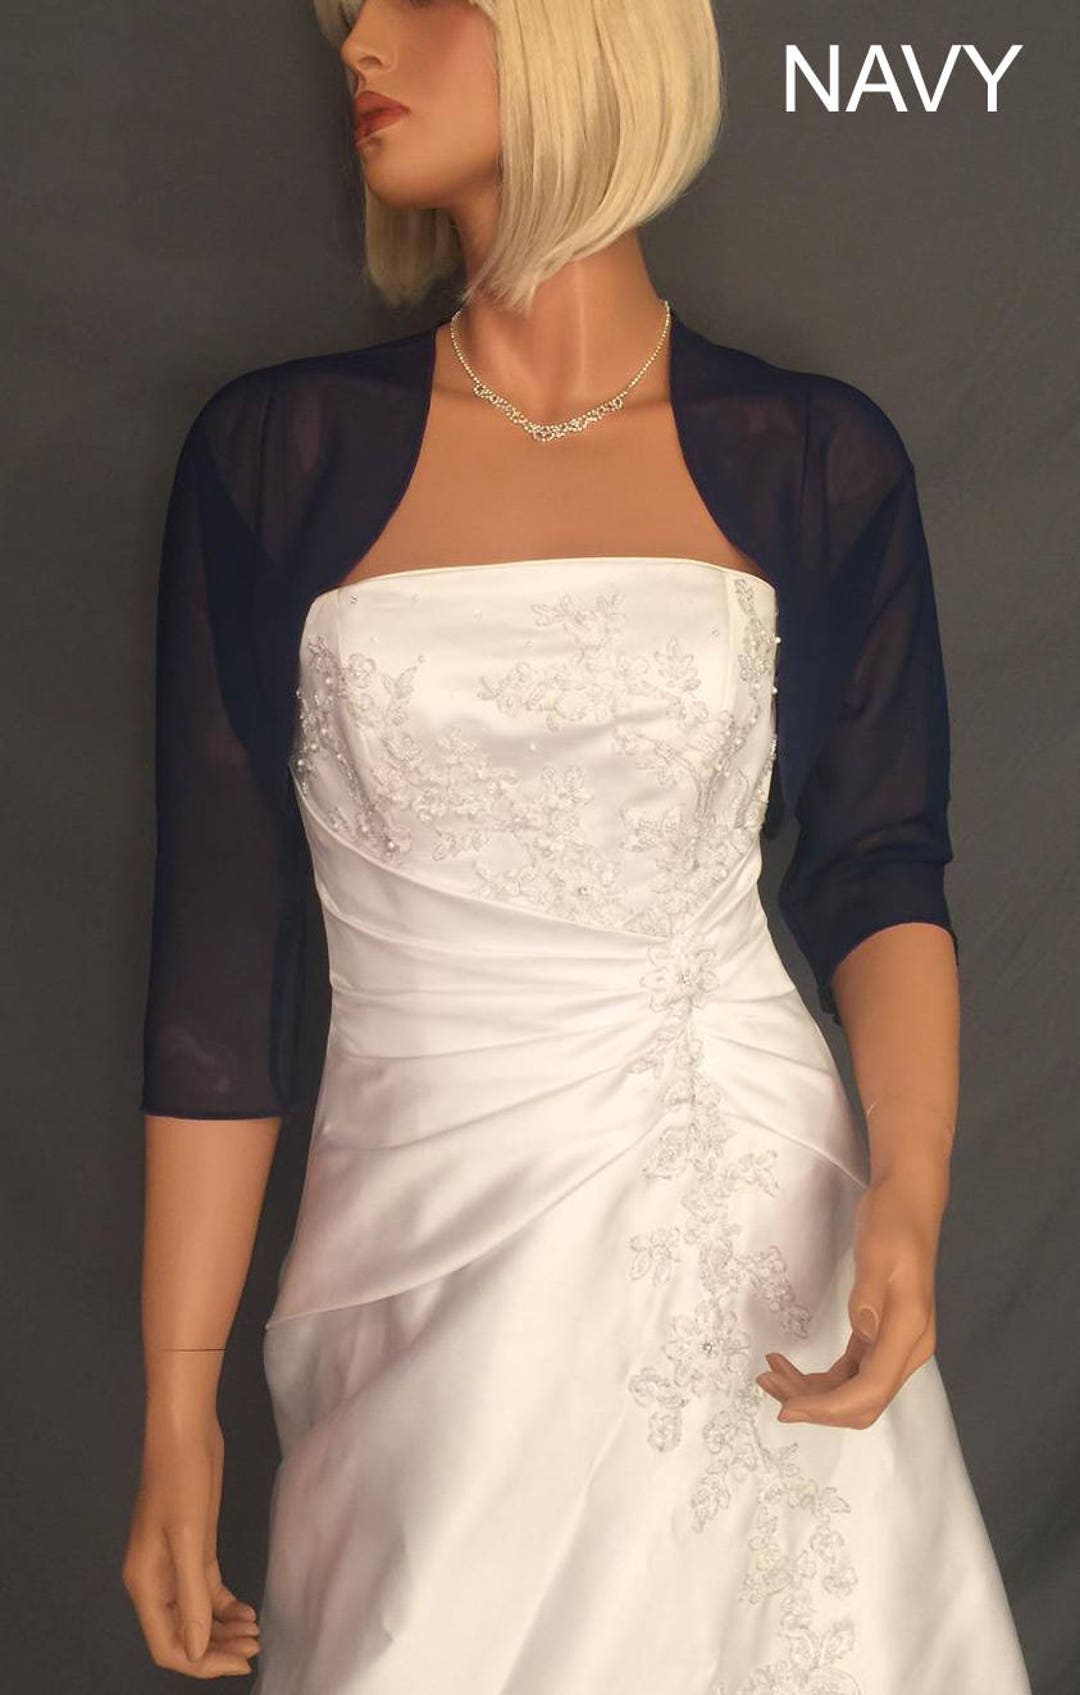 Buy Wedding Dress Shrug Online In India - Etsy India